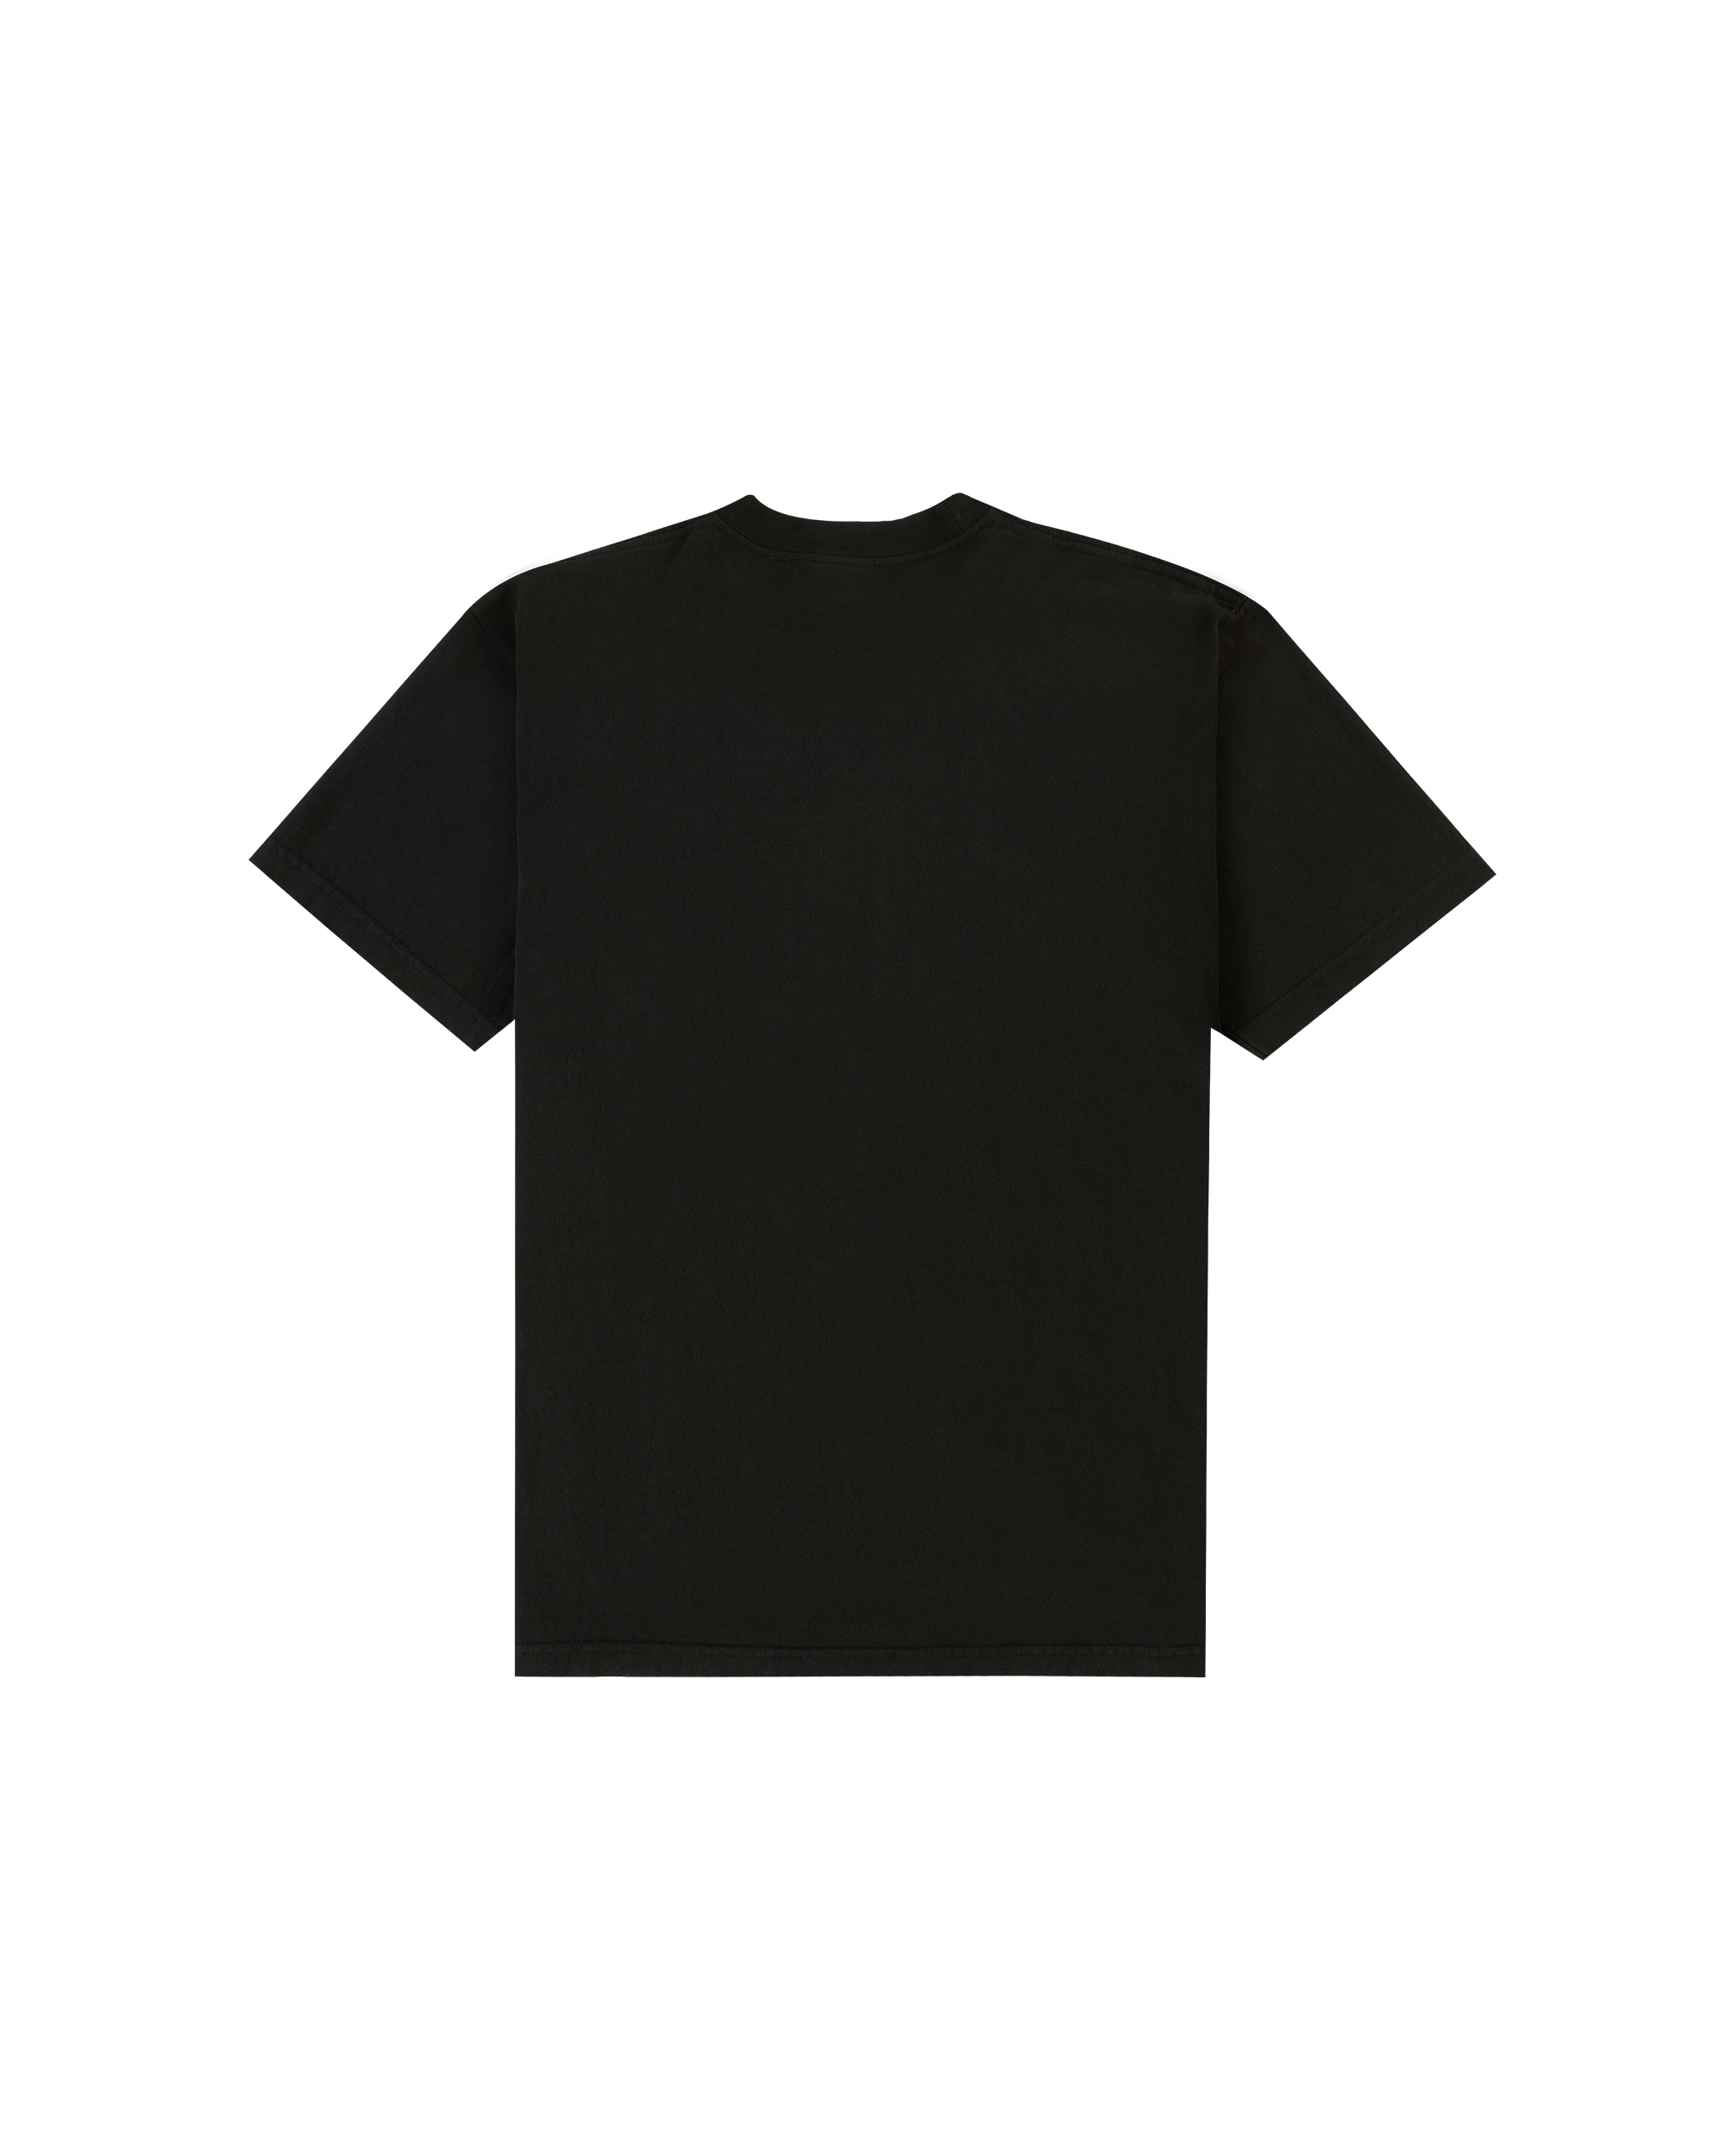 Flying High T-shirt - Black